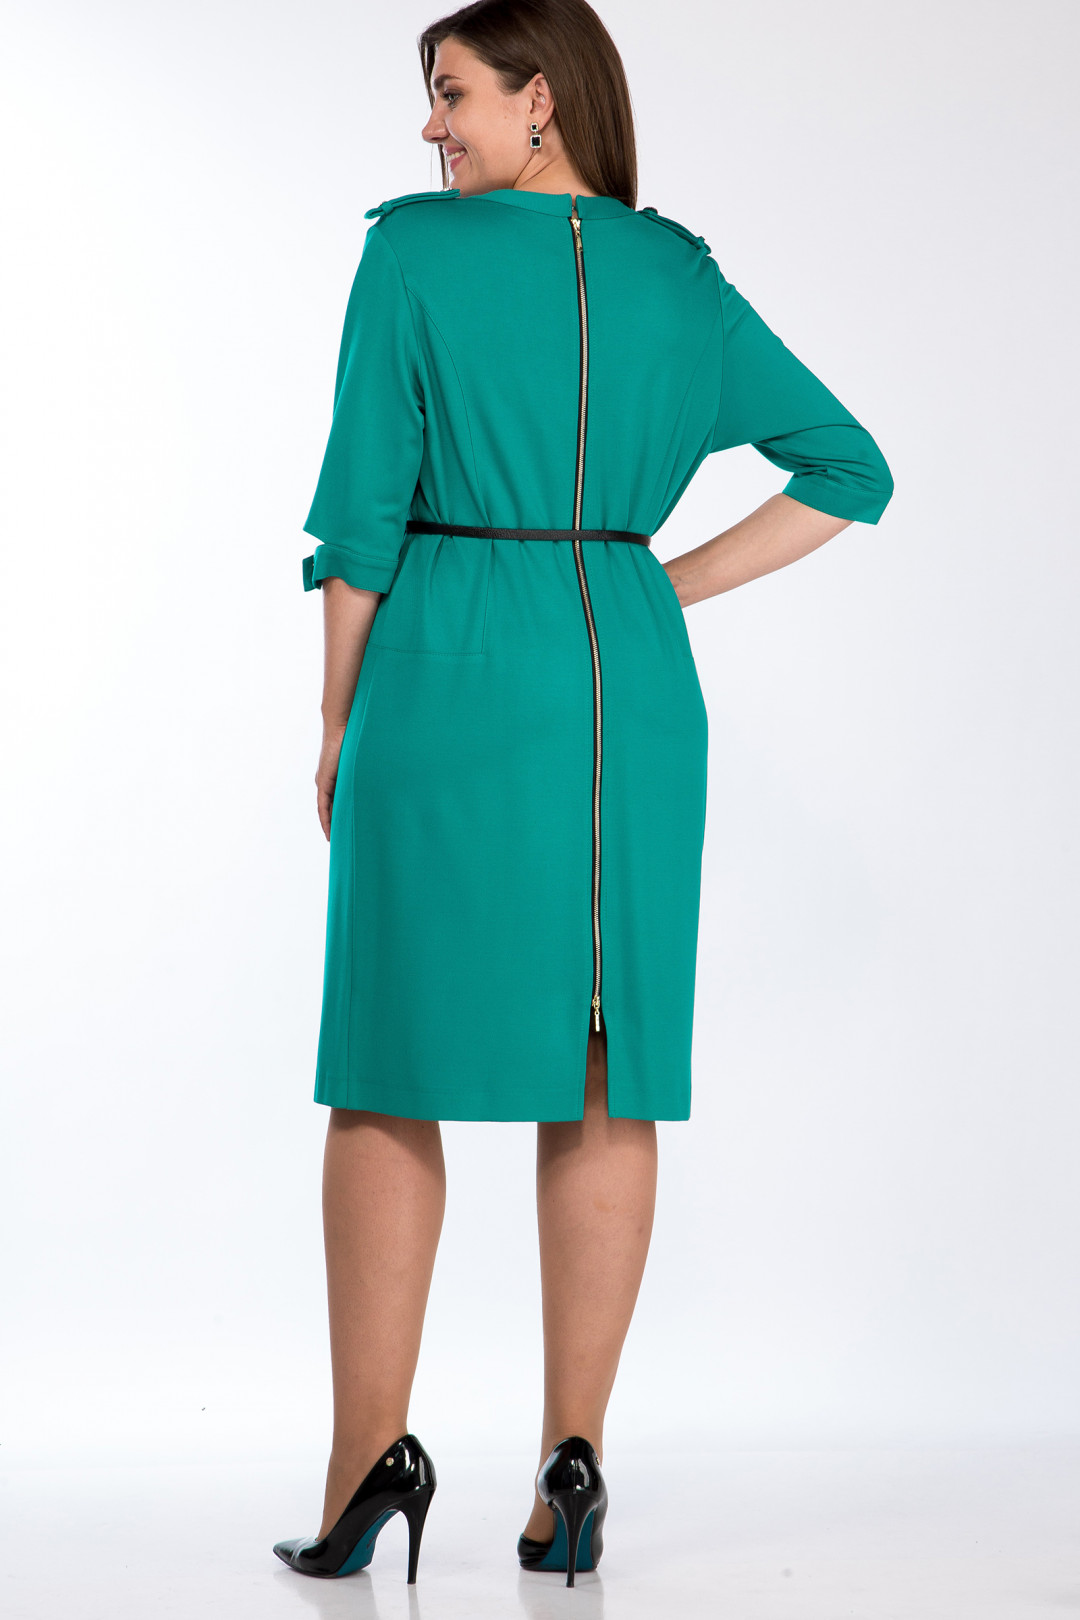 Платье LadyStyleClassic 425/1 голубо-зеленый